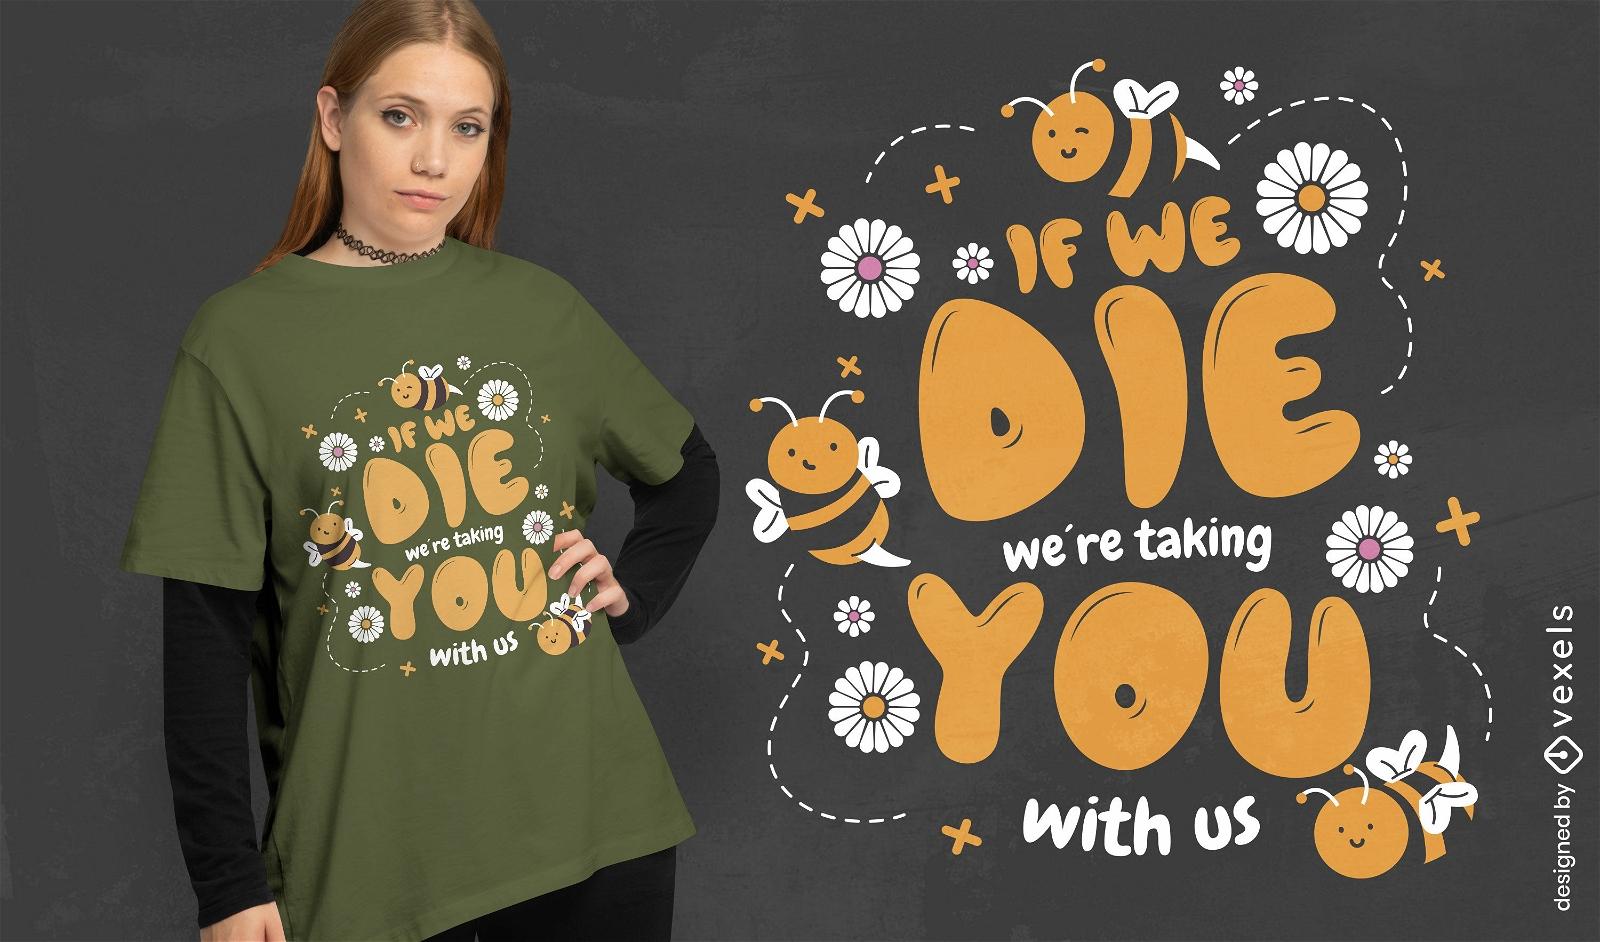 Speichern Sie das Bienen-Zitat-T-Shirt-Design